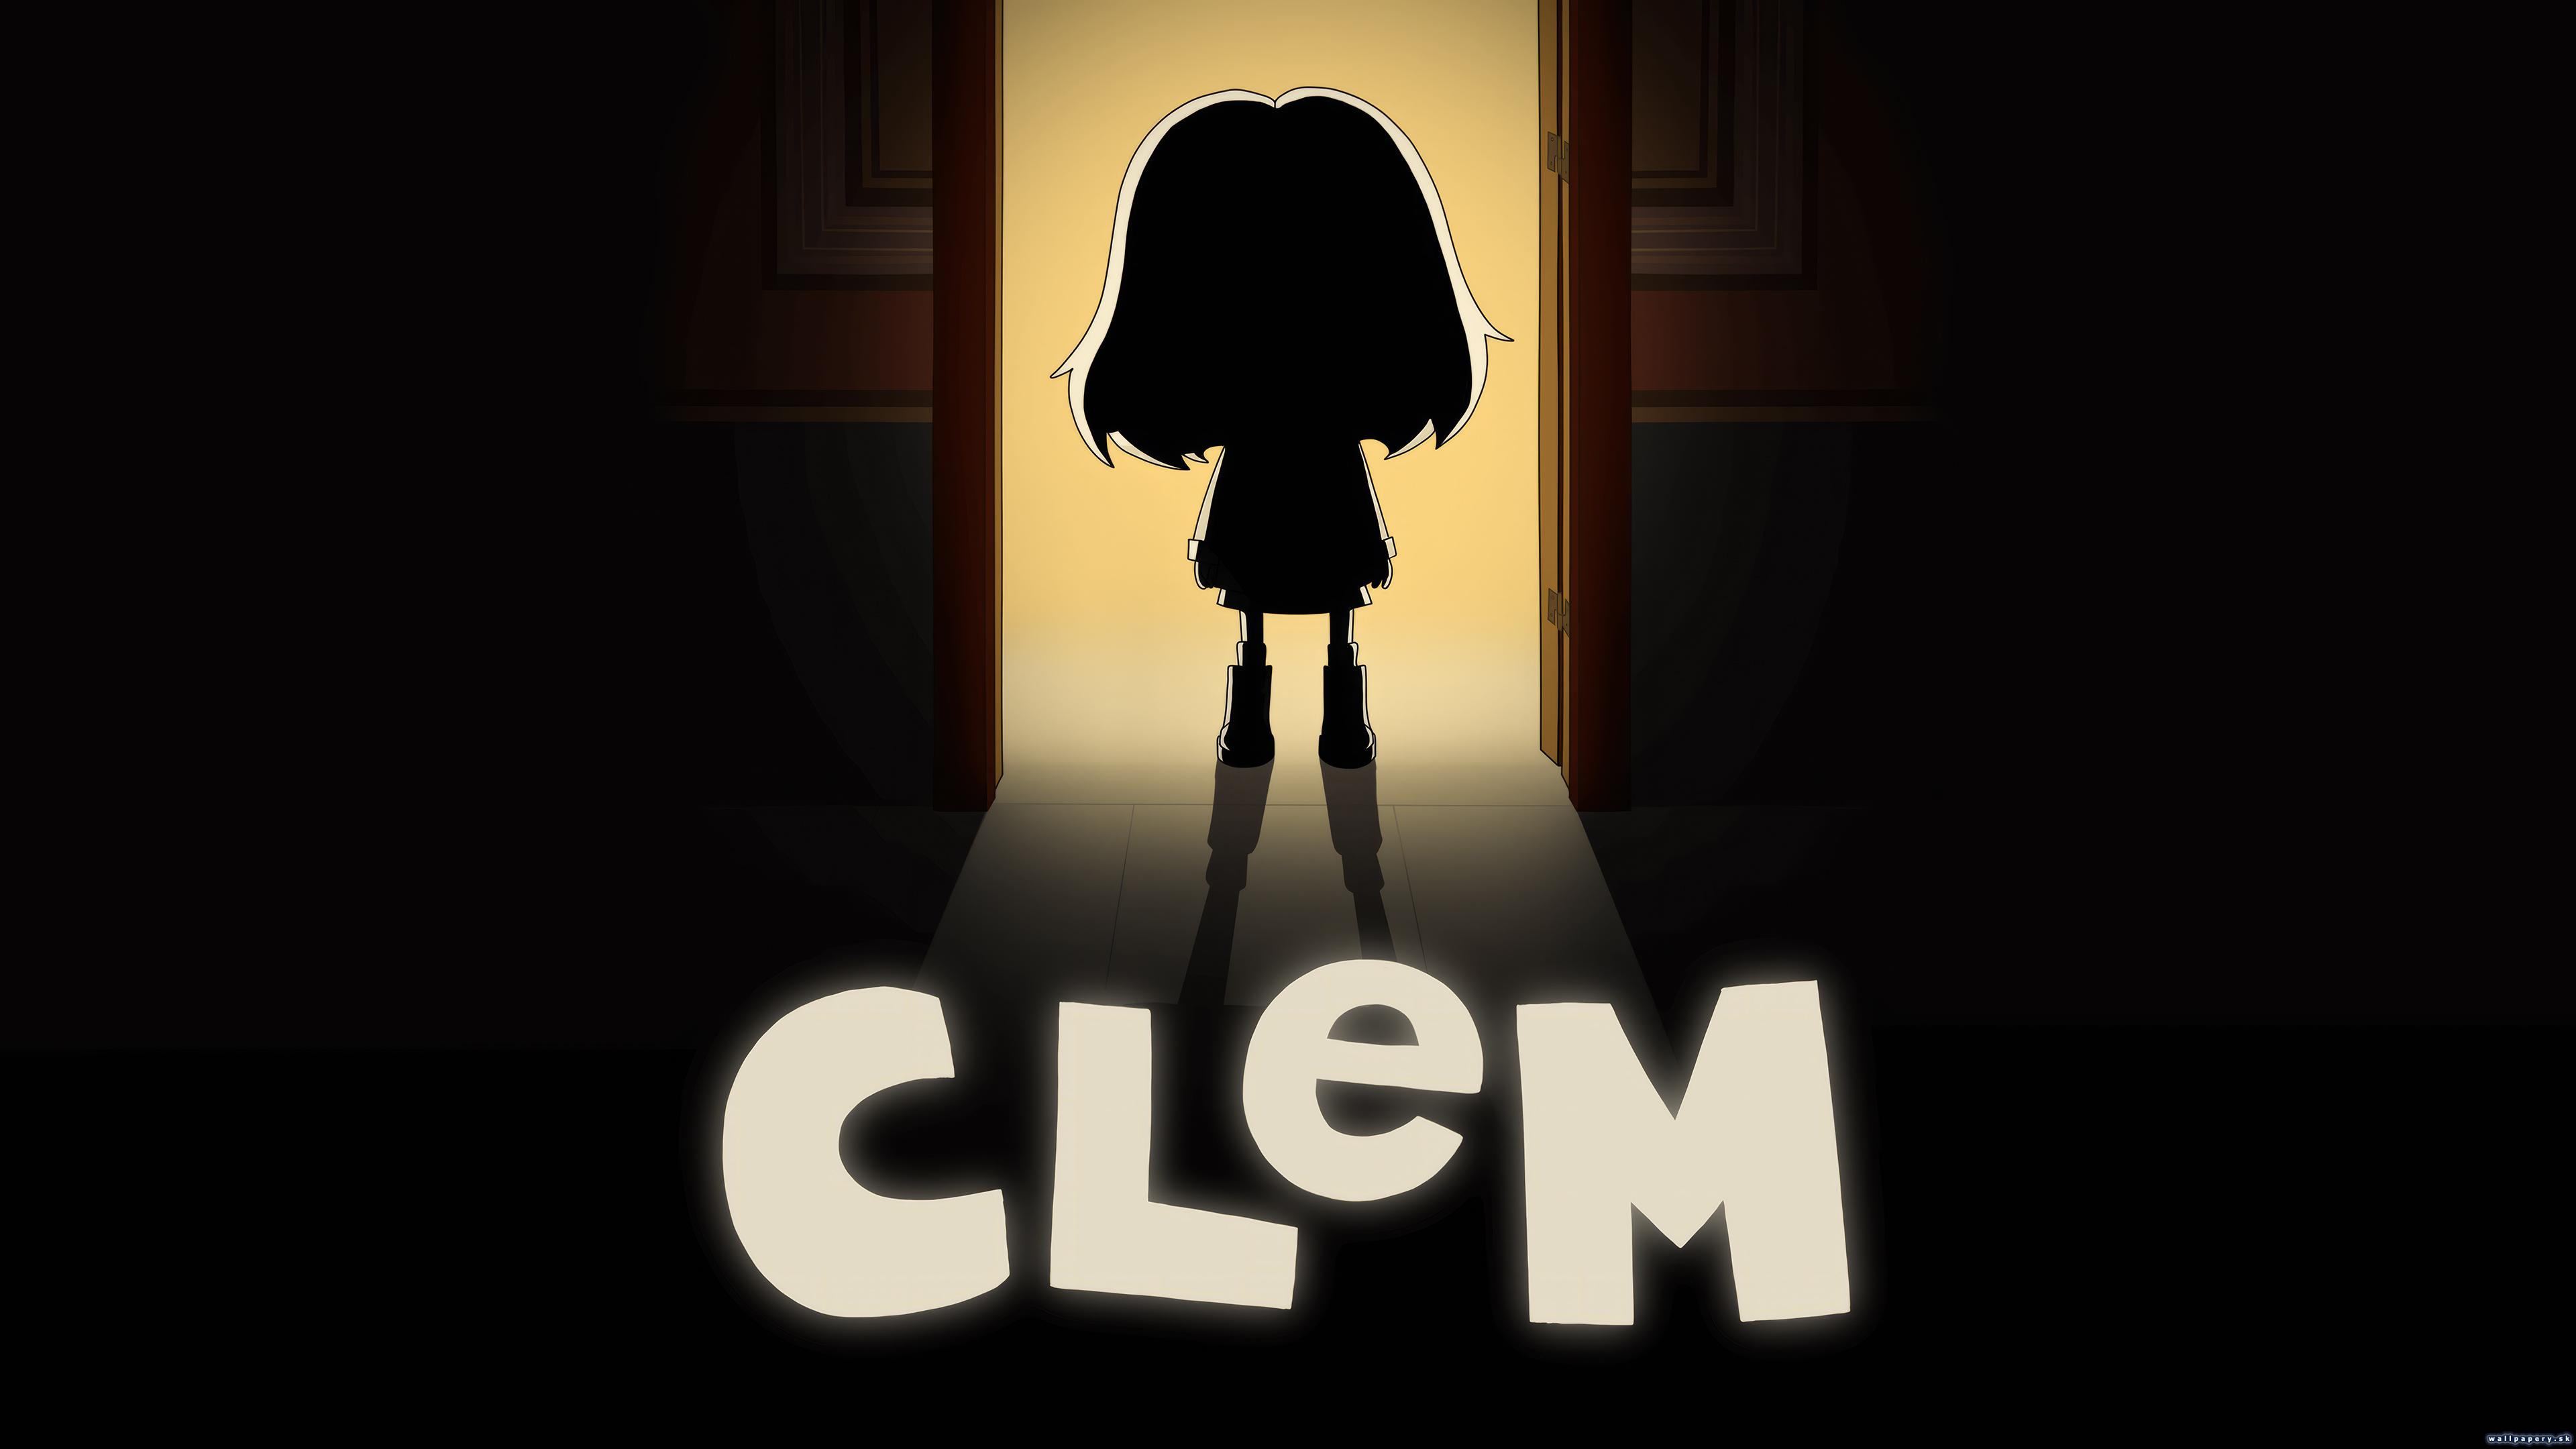 CLeM - wallpaper 1